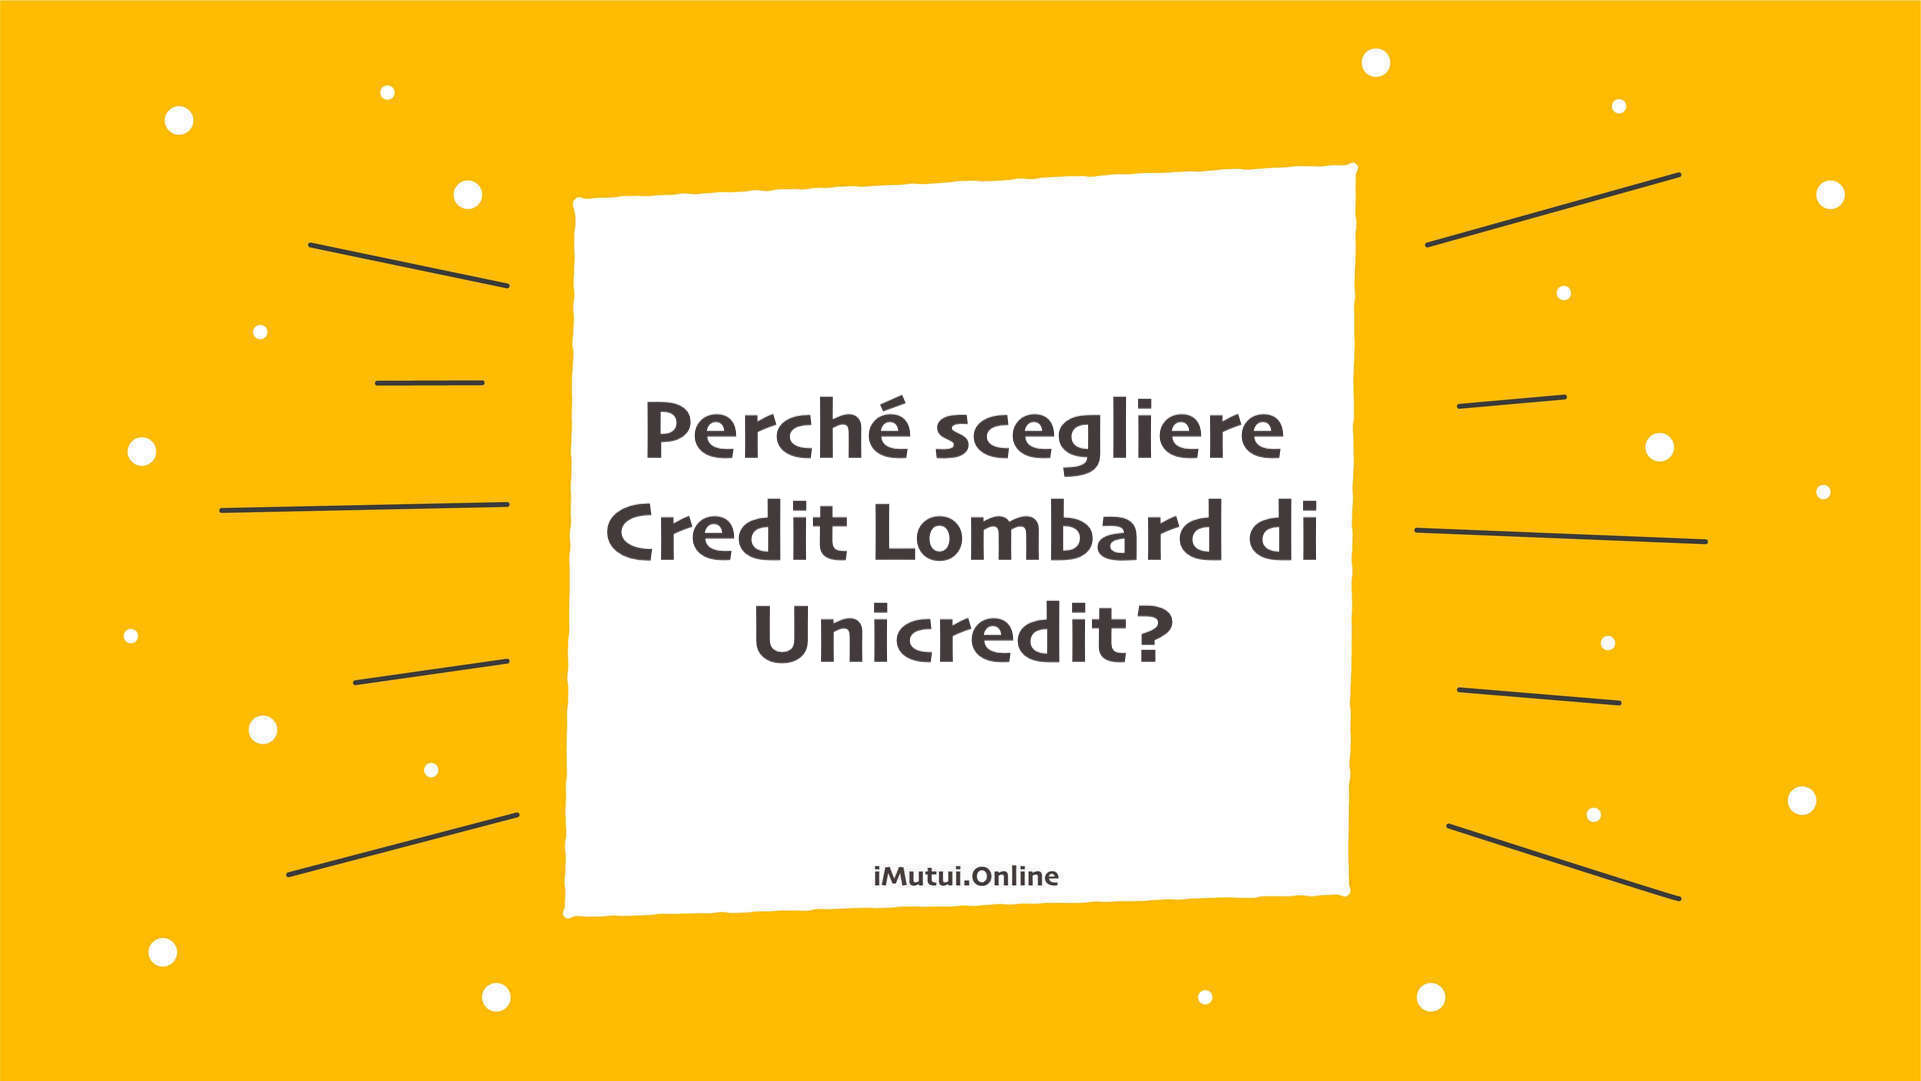 Perché scegliere Credit Lombard di Unicredit?